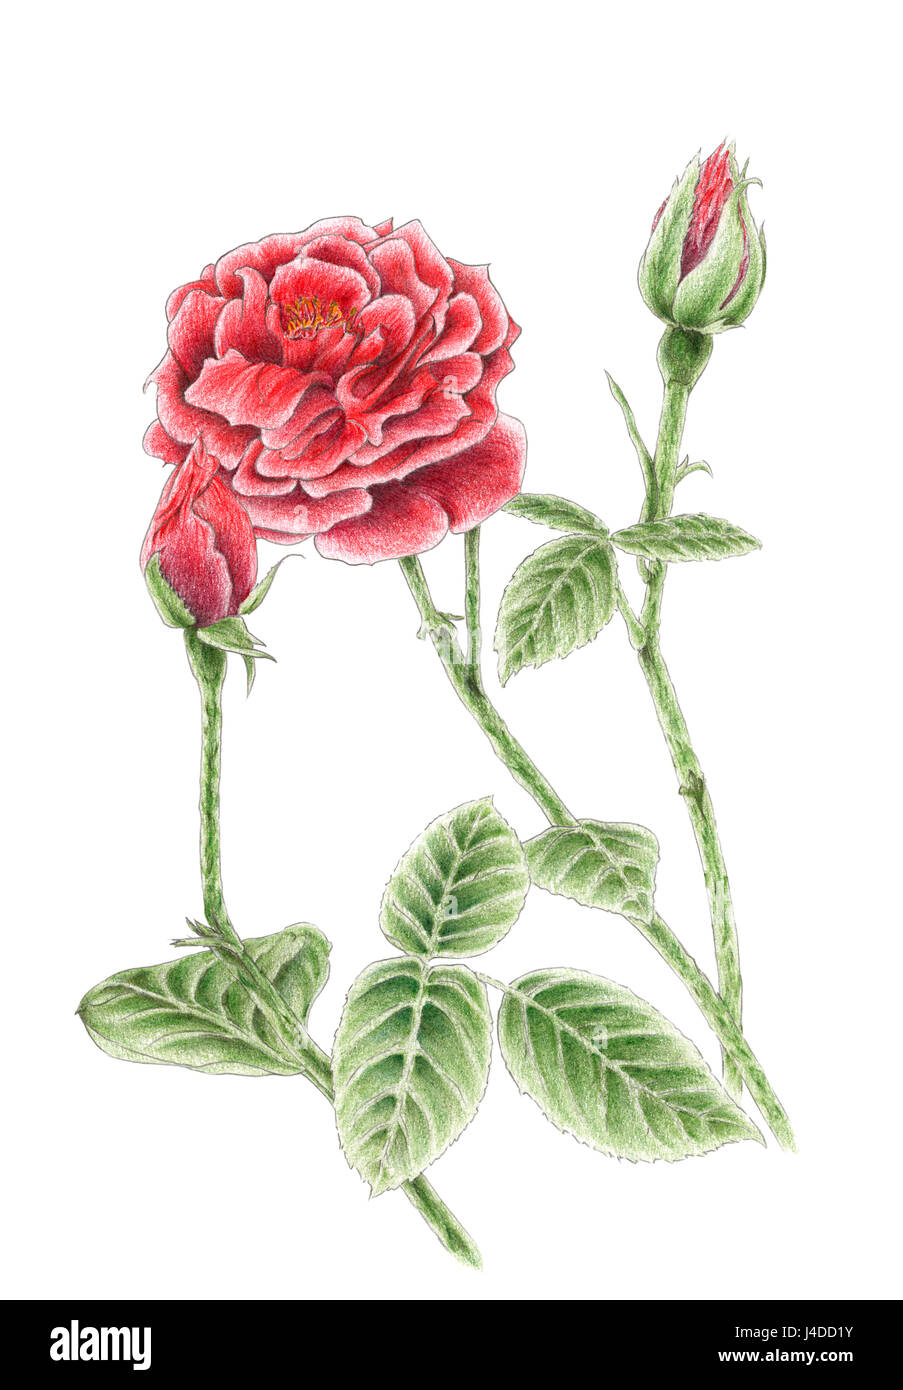 Dessin d'une rose de jardin sur fond blanc. Crayons de couleur sur papier. Banque D'Images